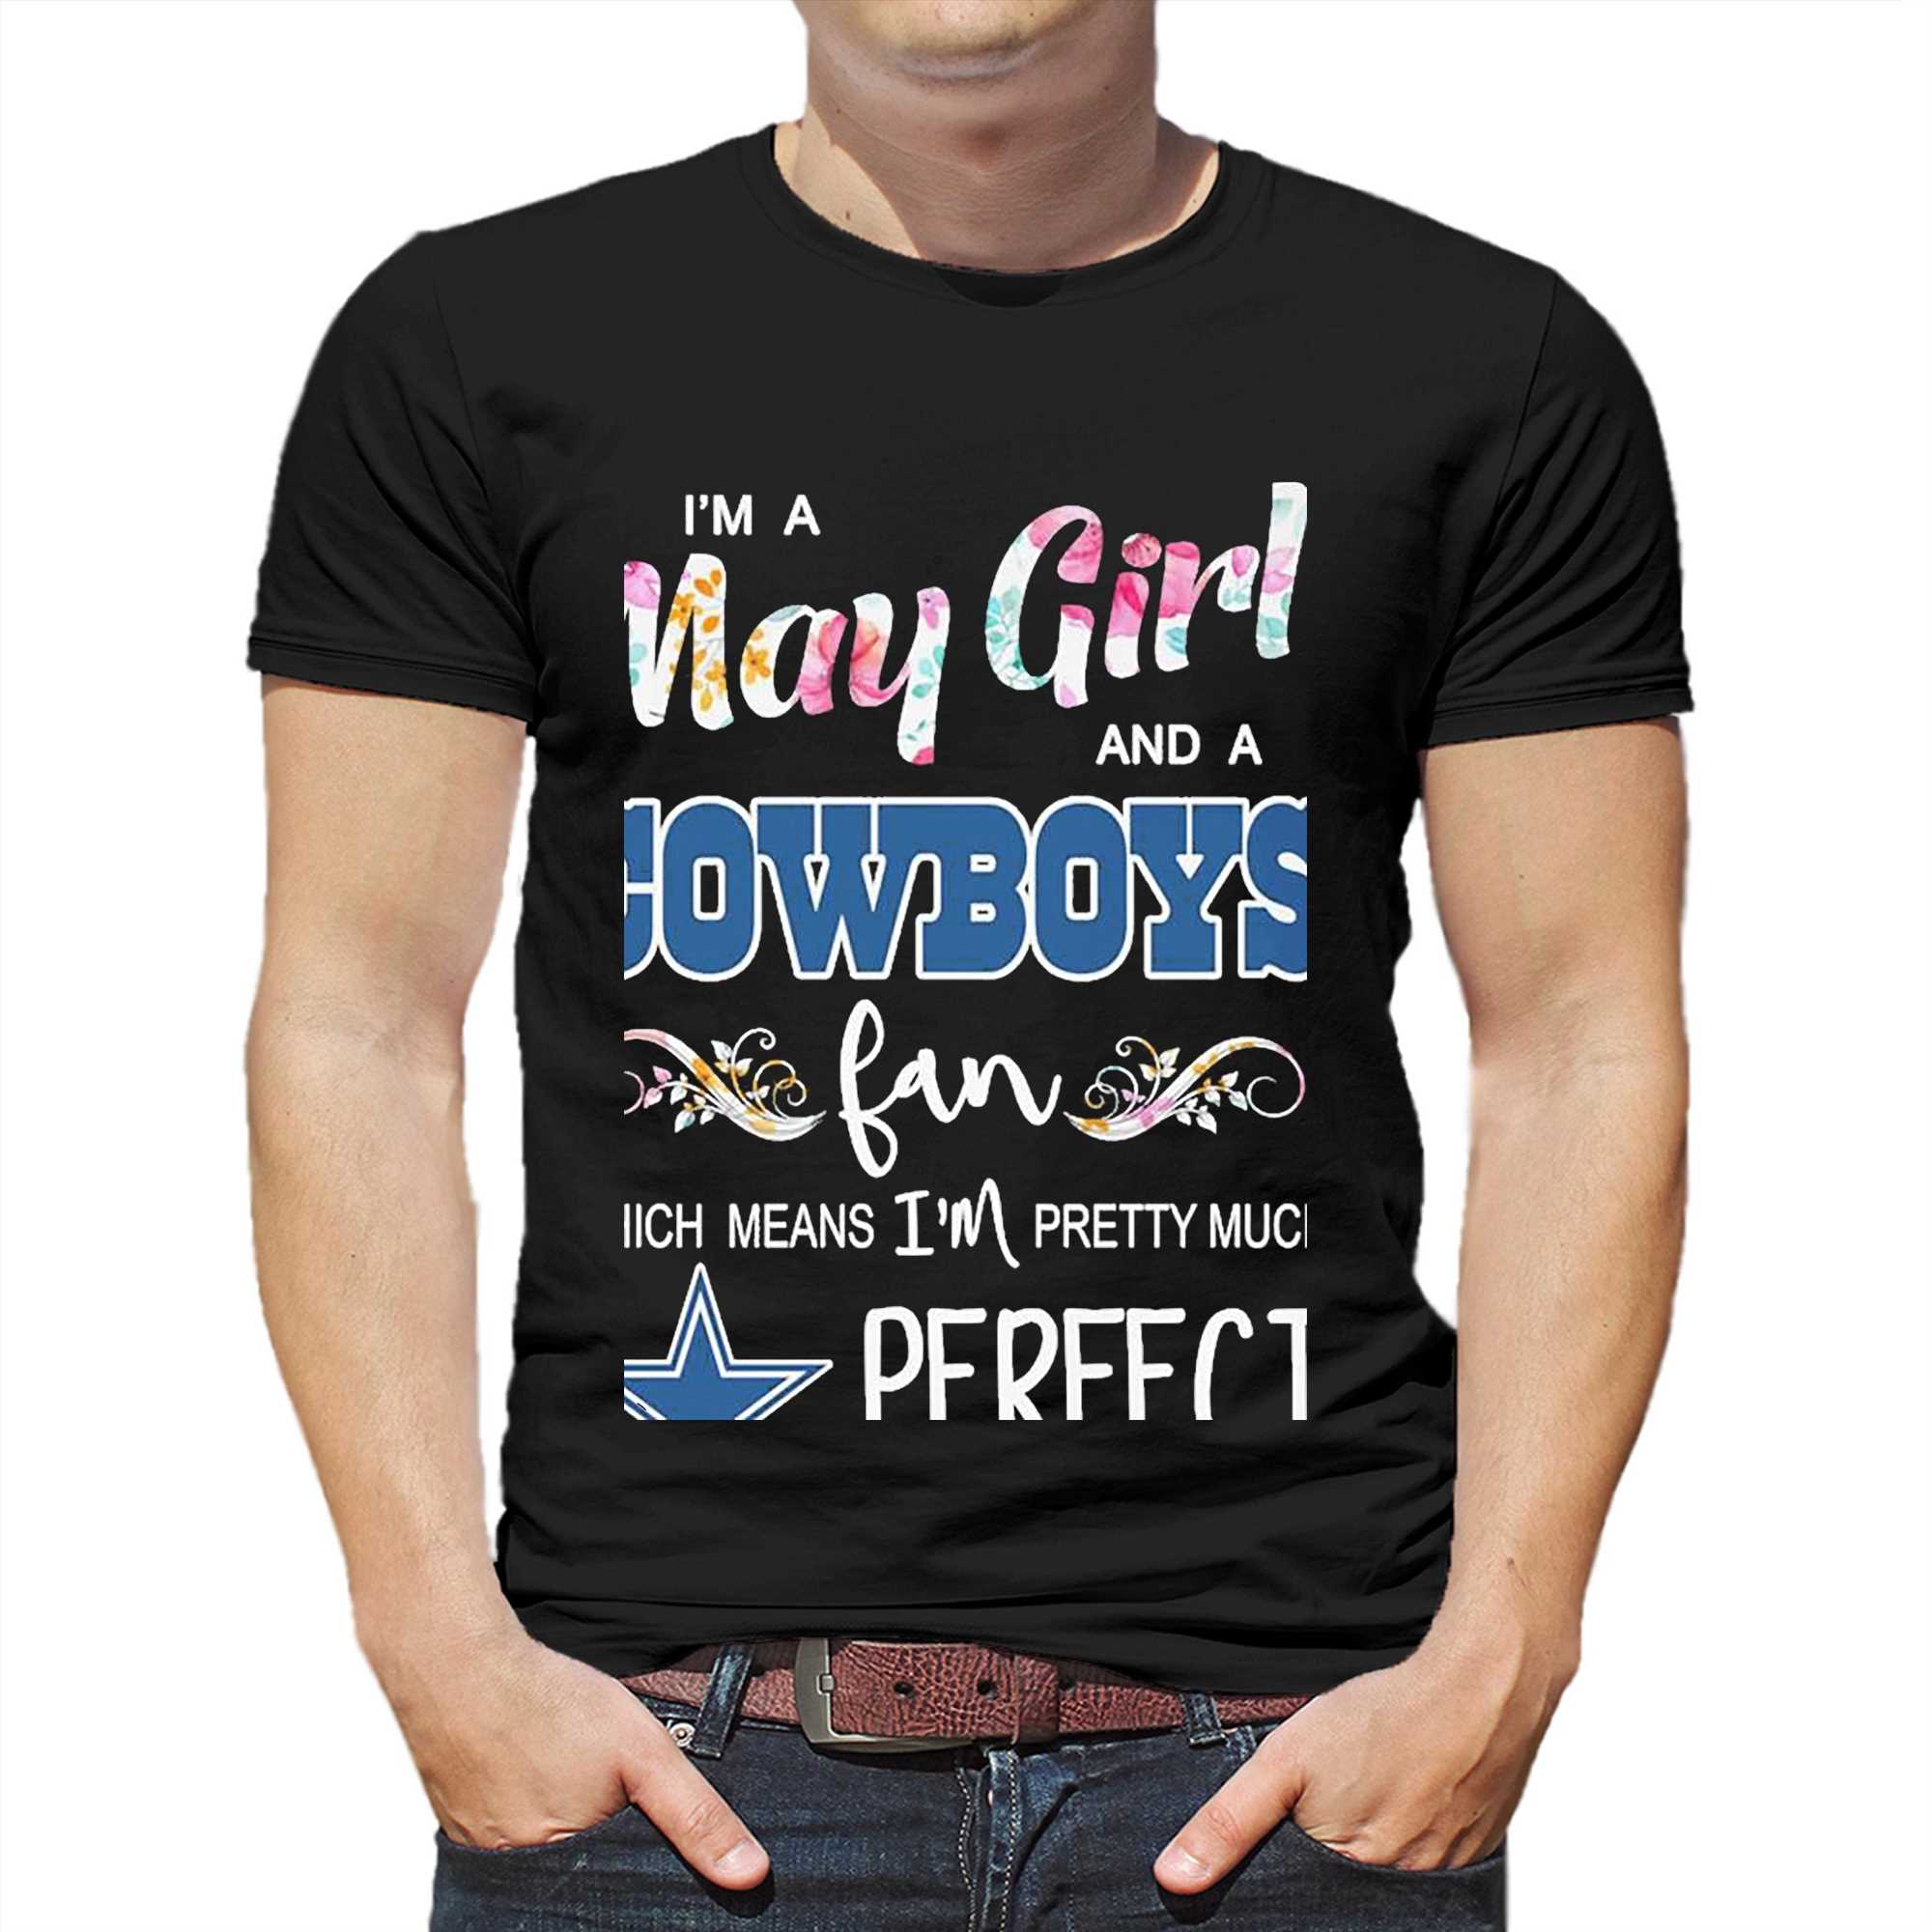 cowboys fan shirt